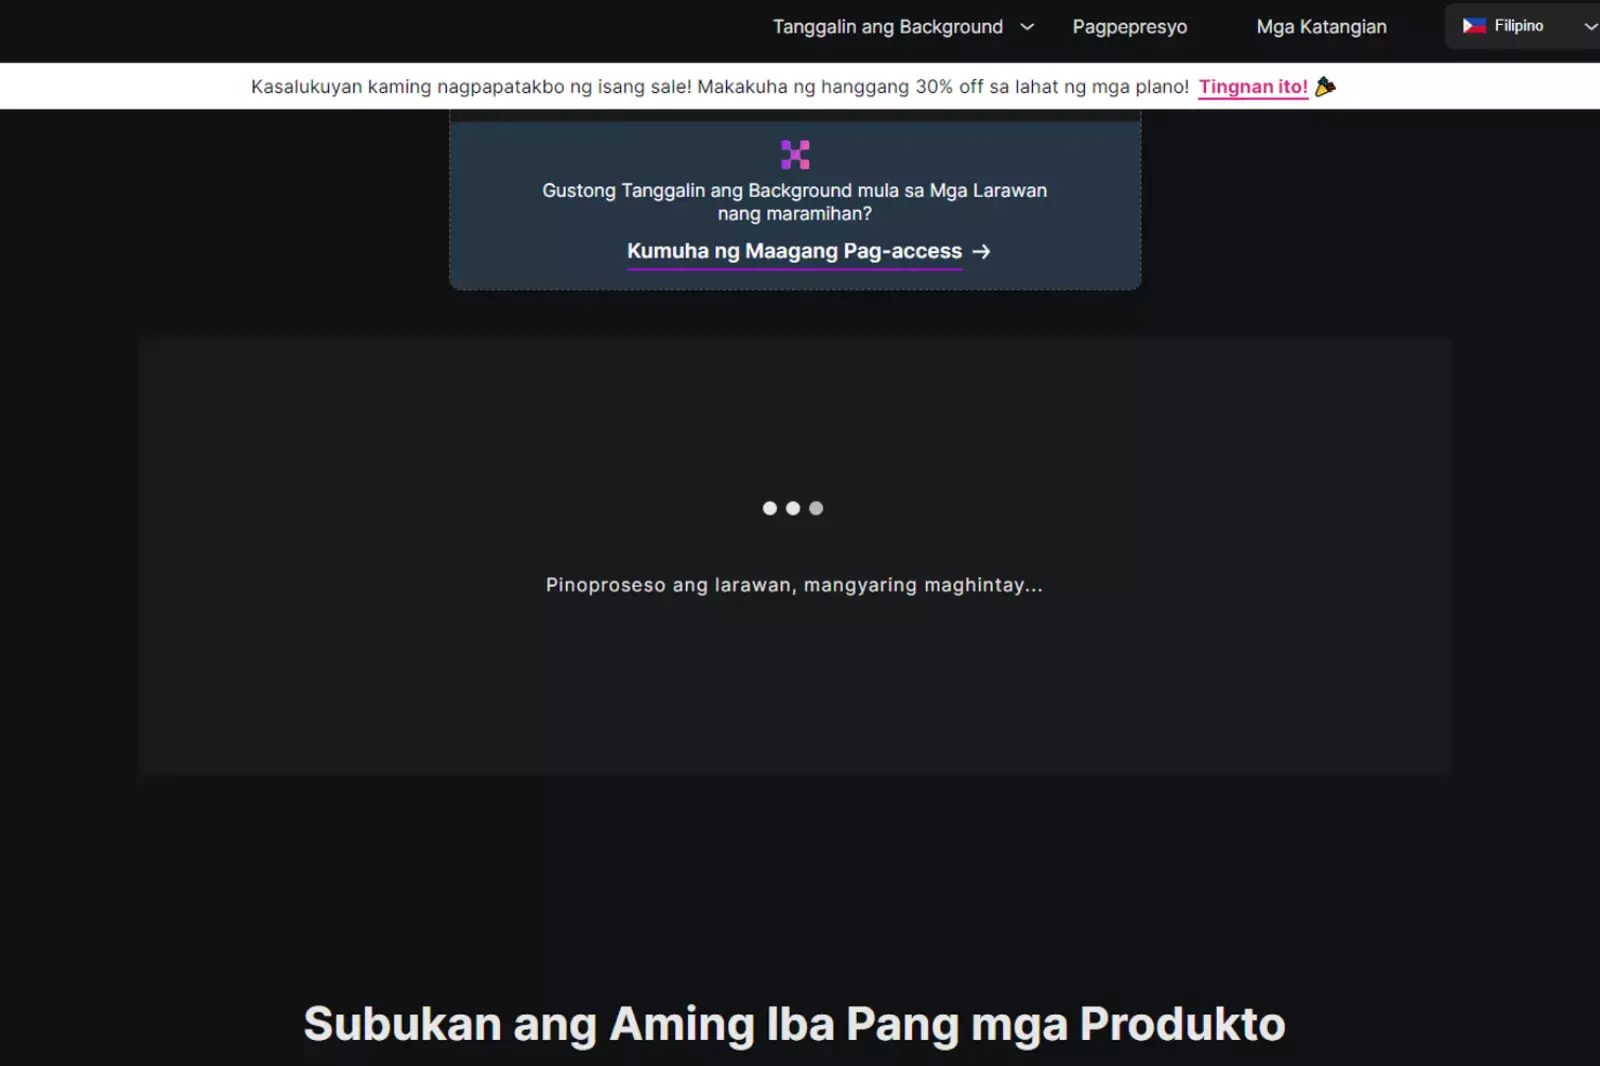 Lilitaw ang mensahe sa screen na nagsasabing "Nag-u-upload ng larawan, mangyaring maghintay..." 